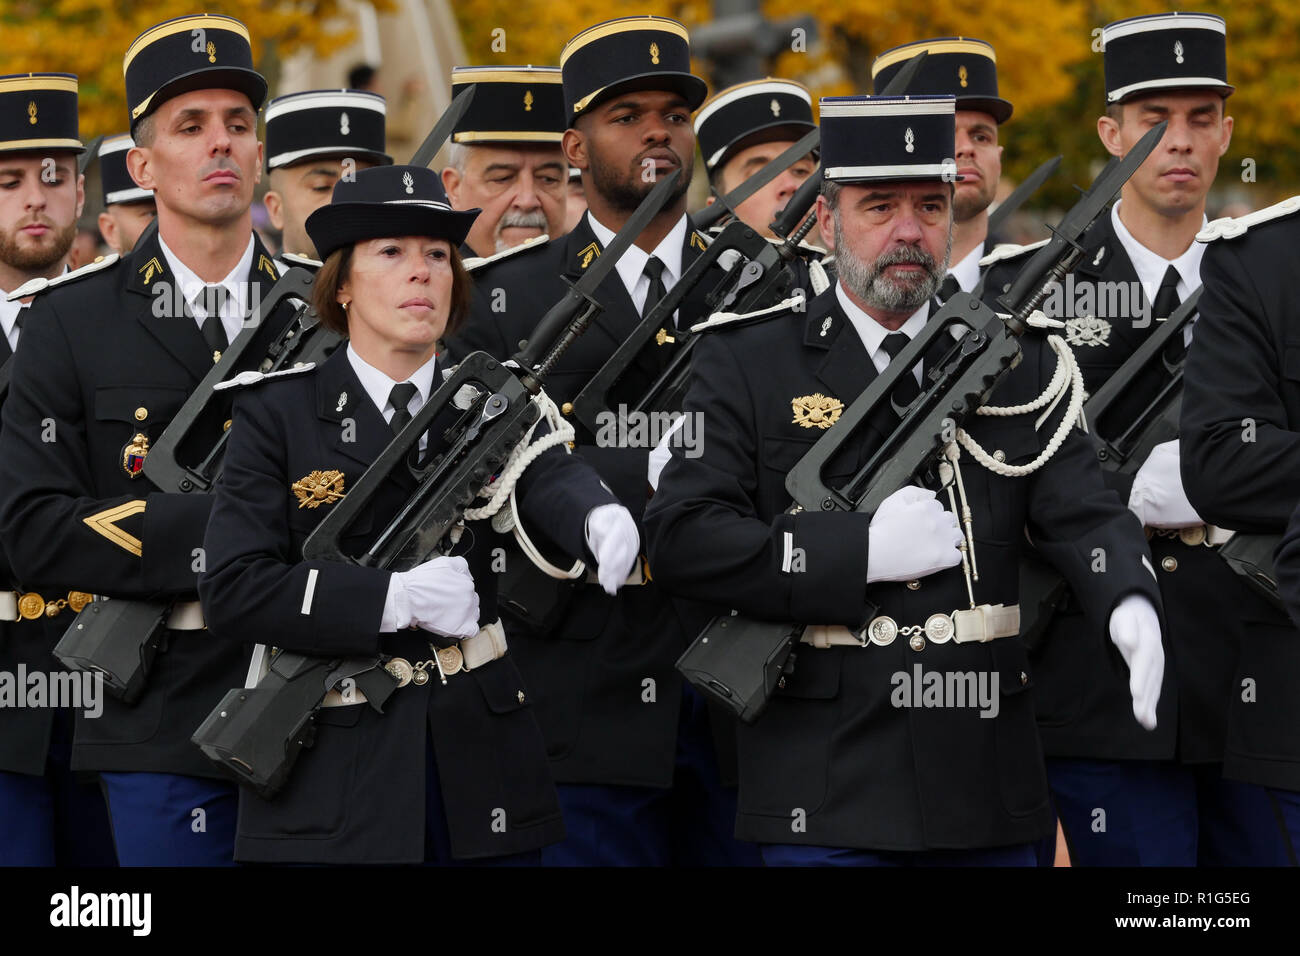 A National gendarmerie detachment attends Commemoration ceremonies of ...